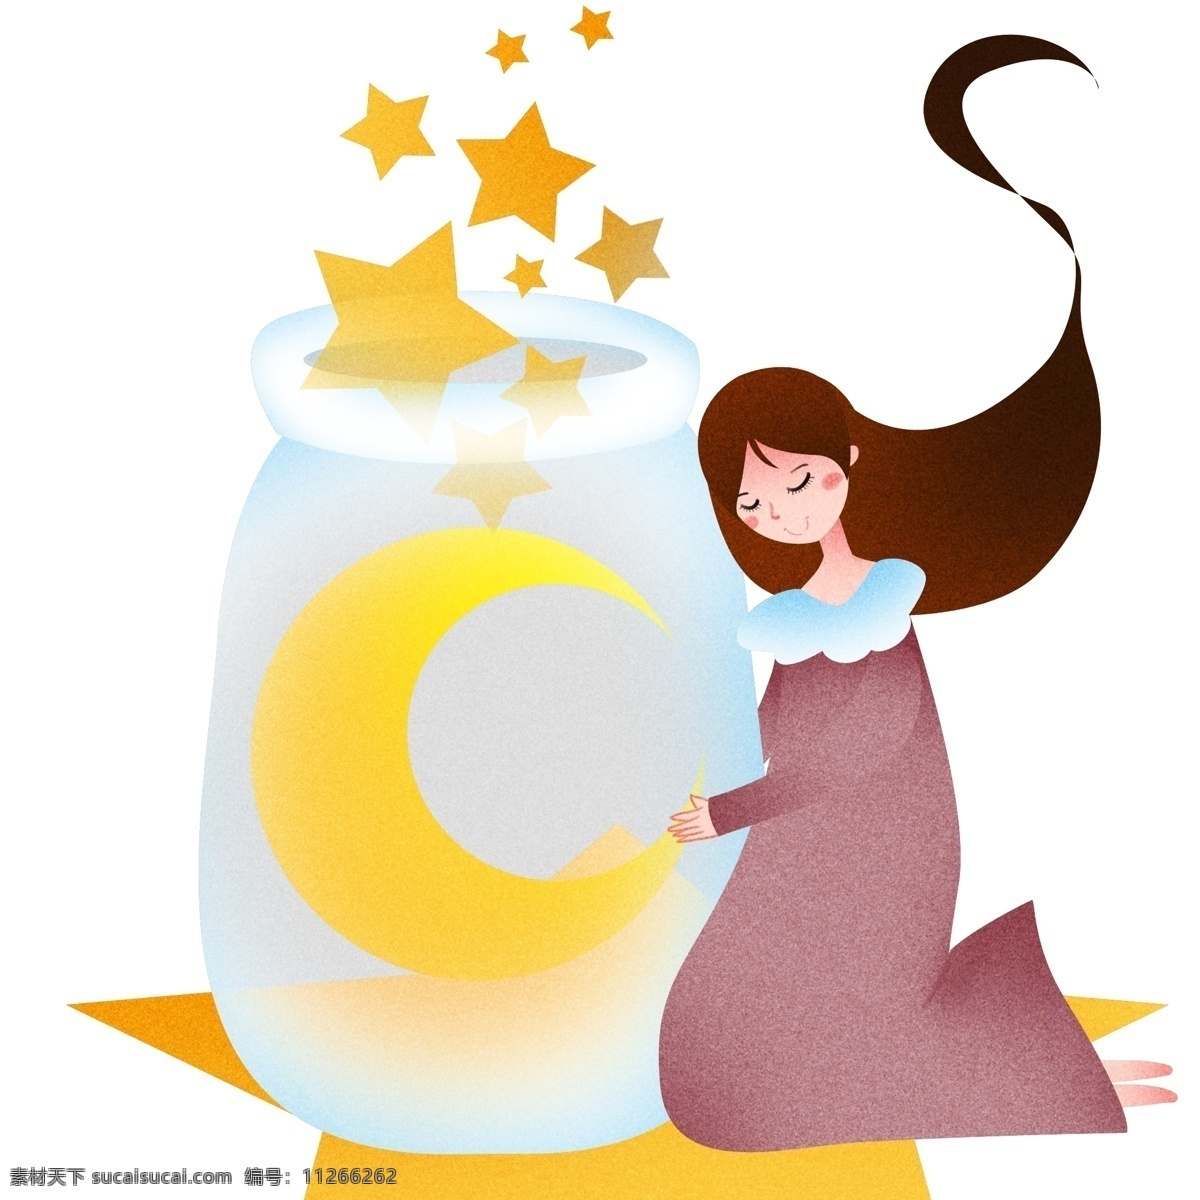 靠着 瓶子 睡觉 女孩 世界 睡眠 日 插画 靠着瓶子睡觉 黄色的星星 白色的瓶子 漂亮的小女孩 卡通人物